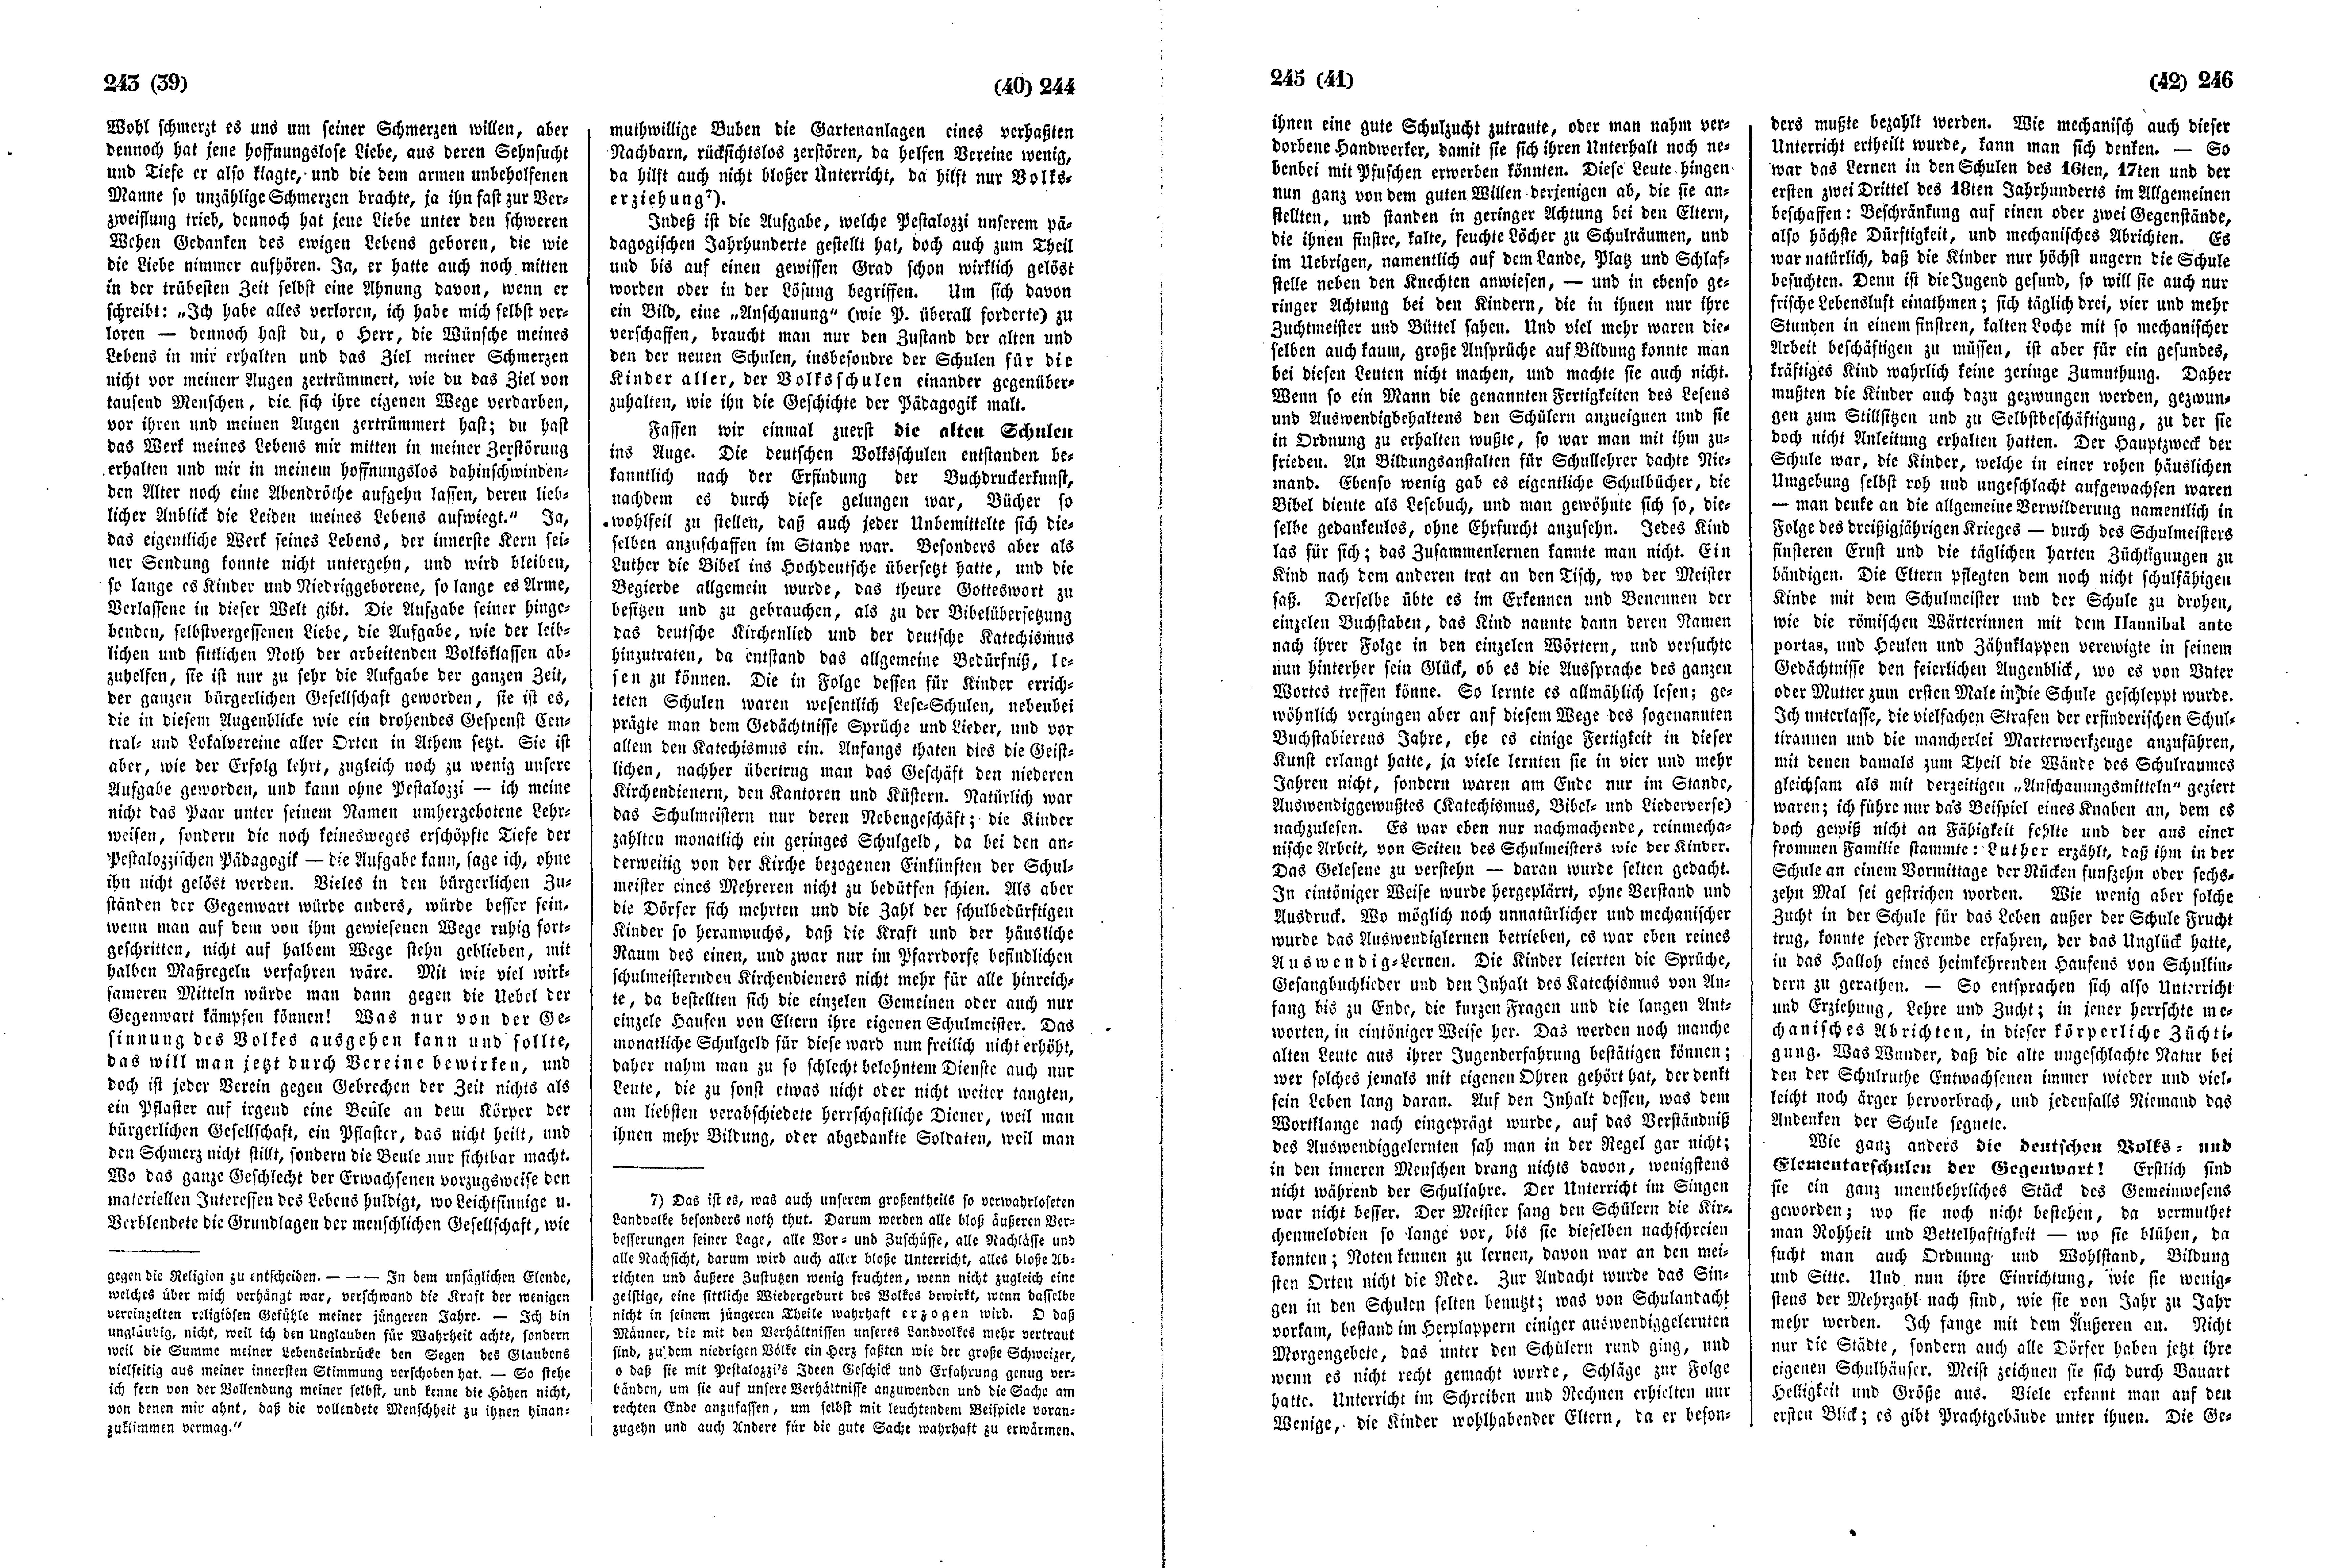 Das Inland [11] (1846) | 66. (243-246) Основной текст